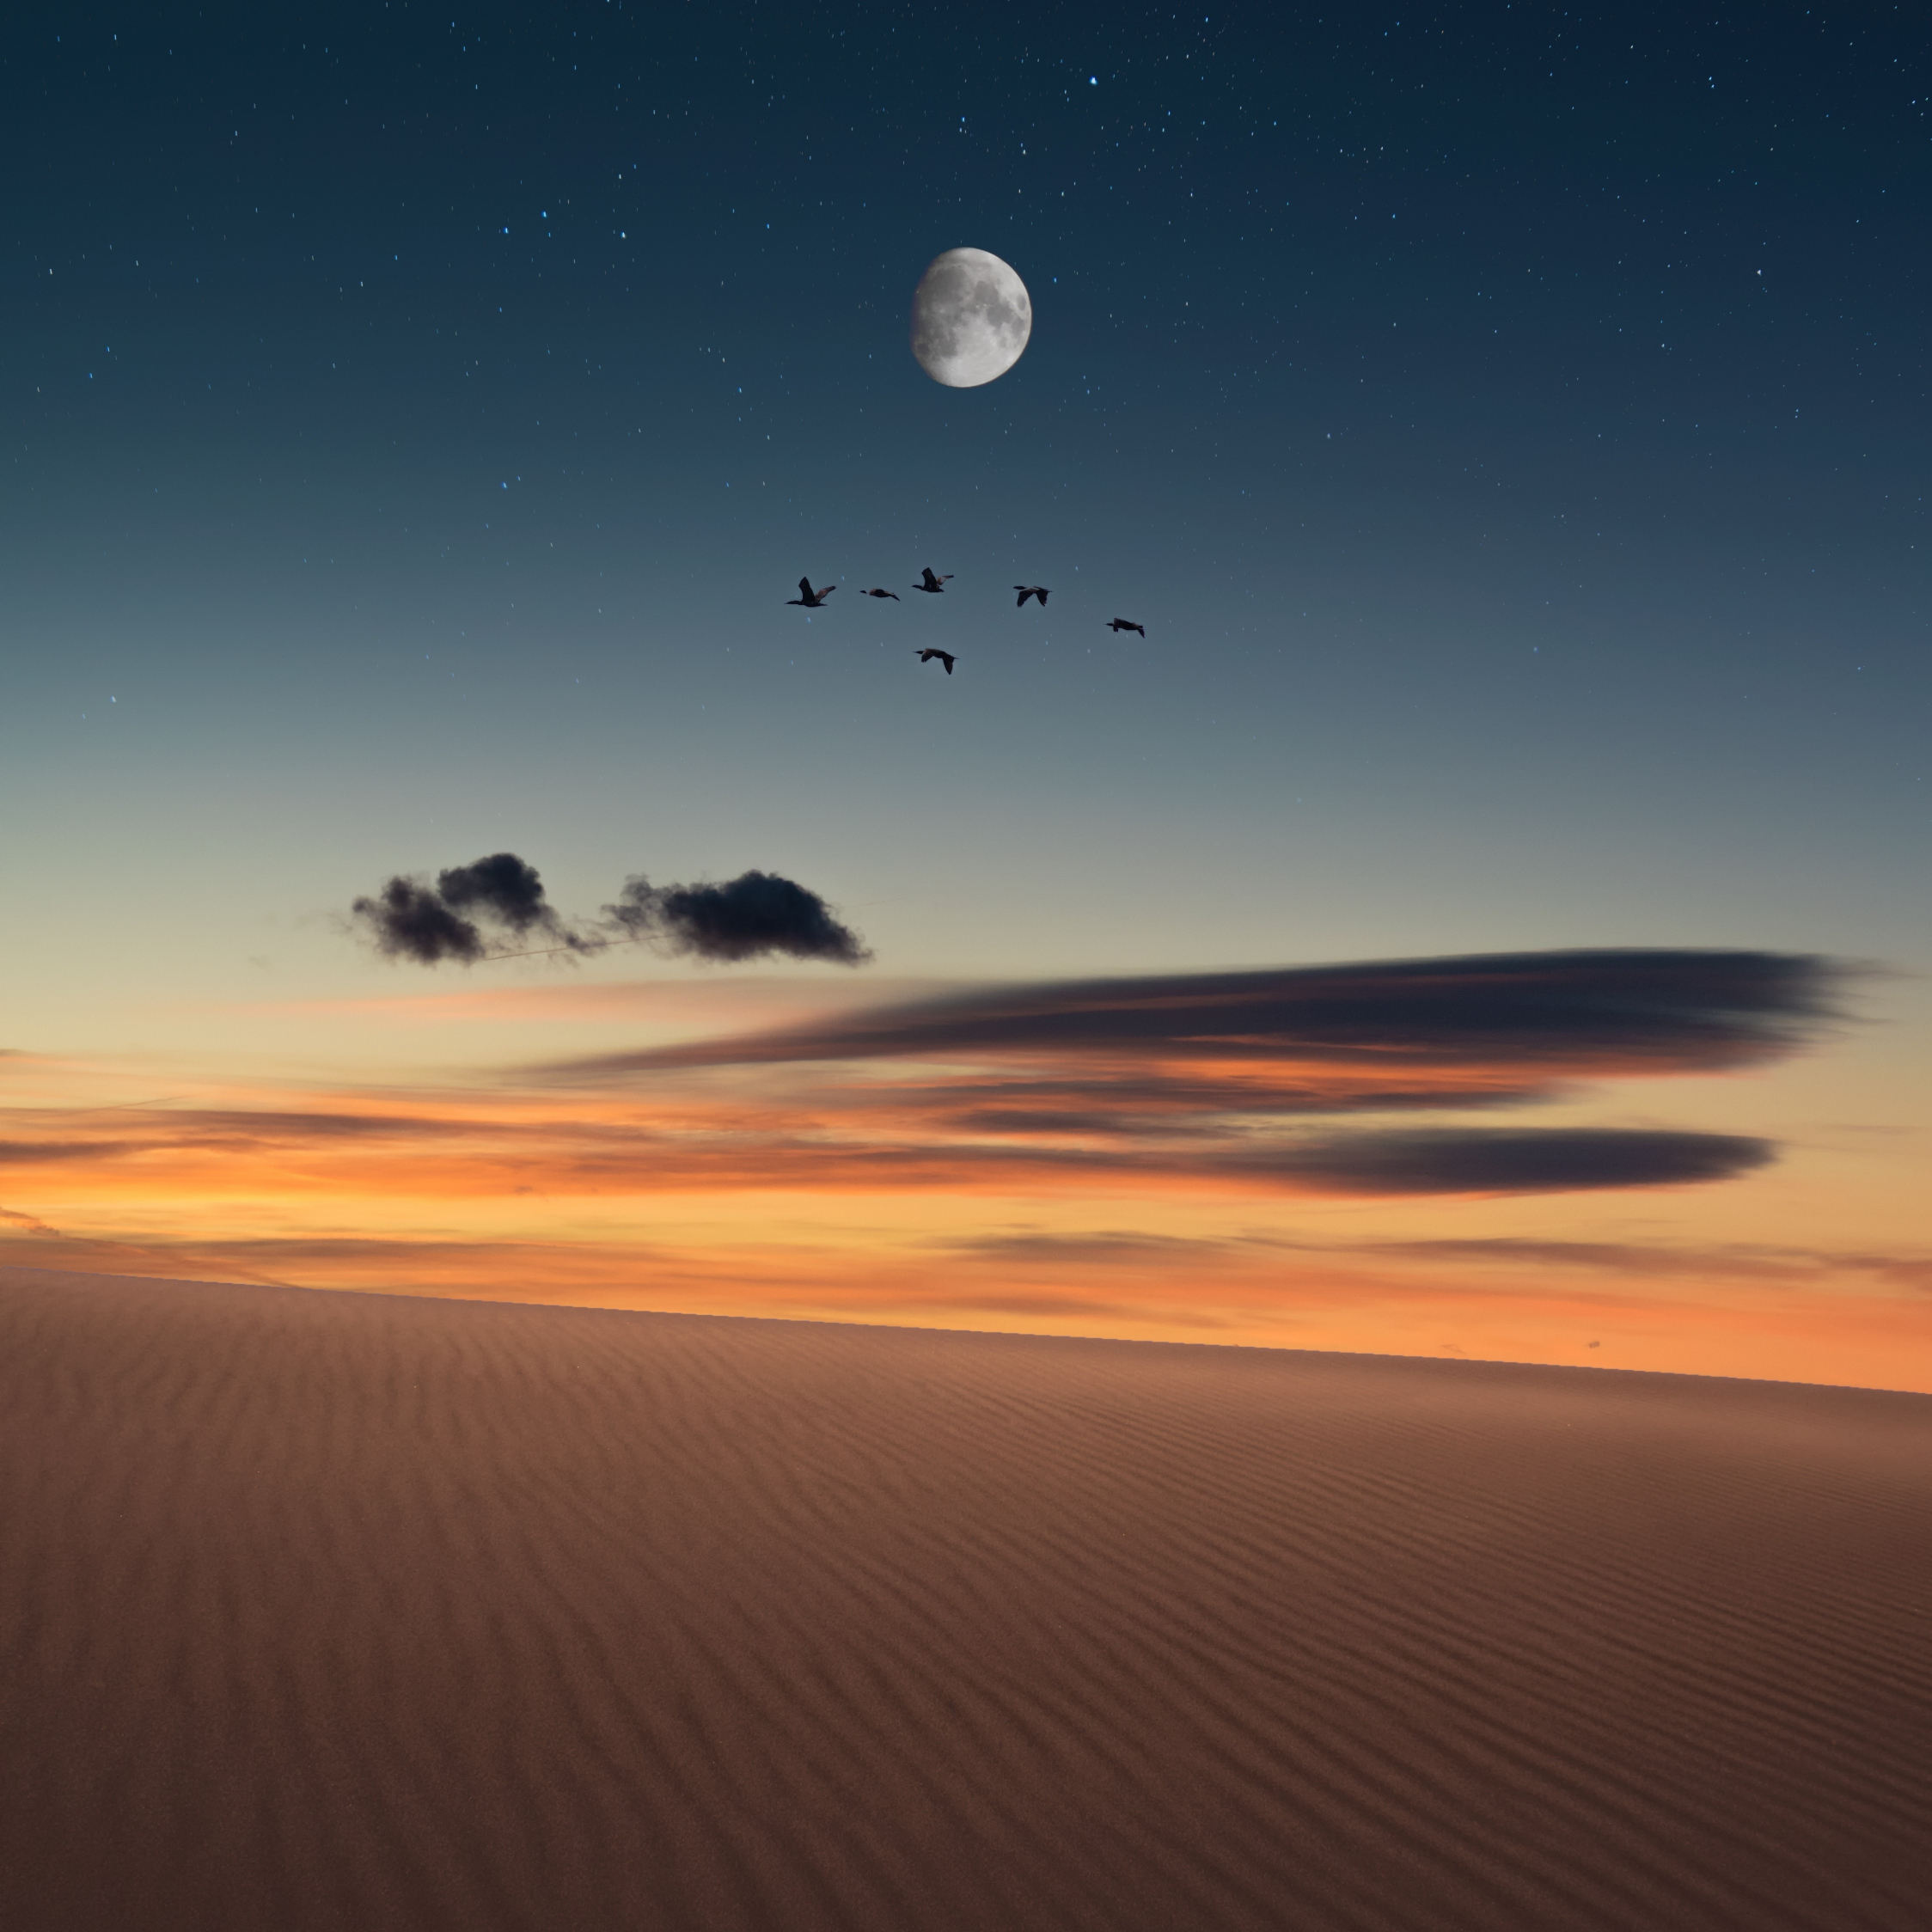 Full moon, birds, landscape, desert, 2248x2248 wallpaper